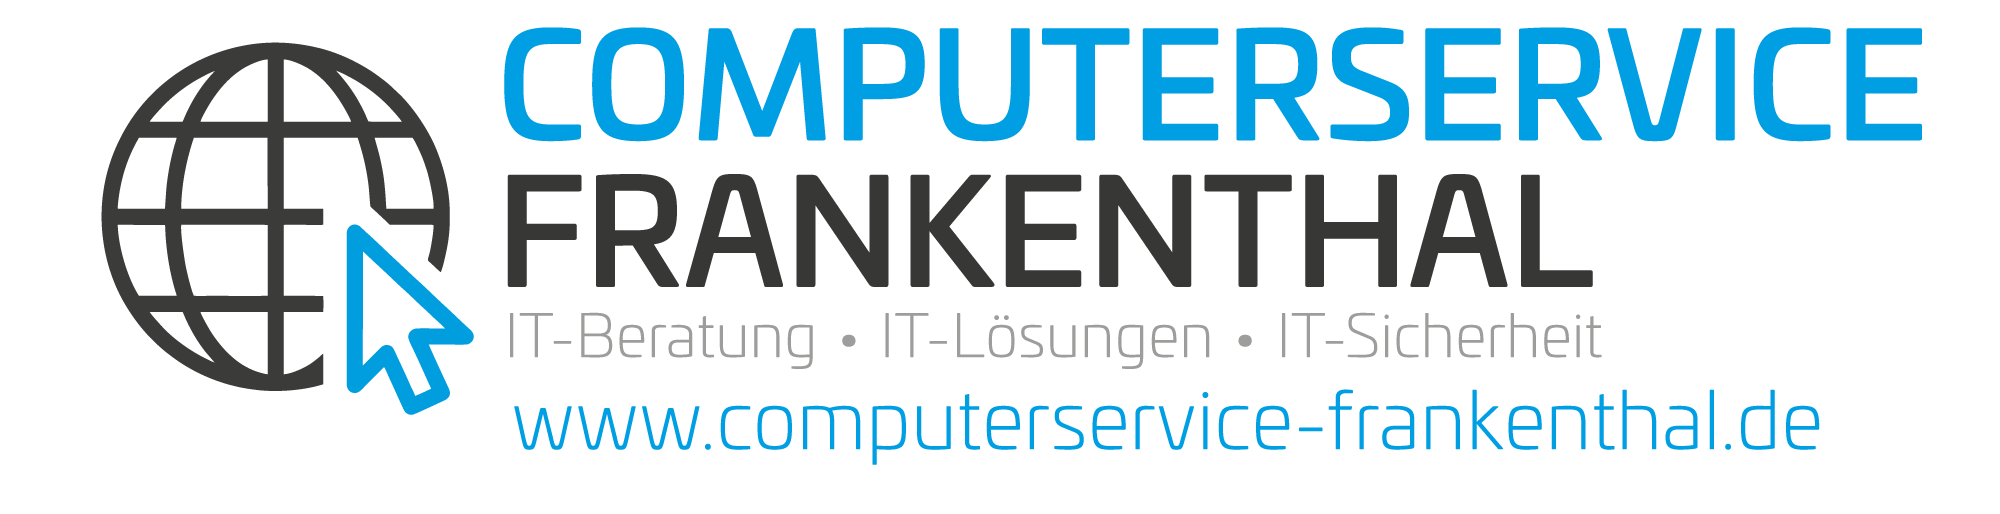 Computerservice Frankenthal - IT Service uns Sicherheit